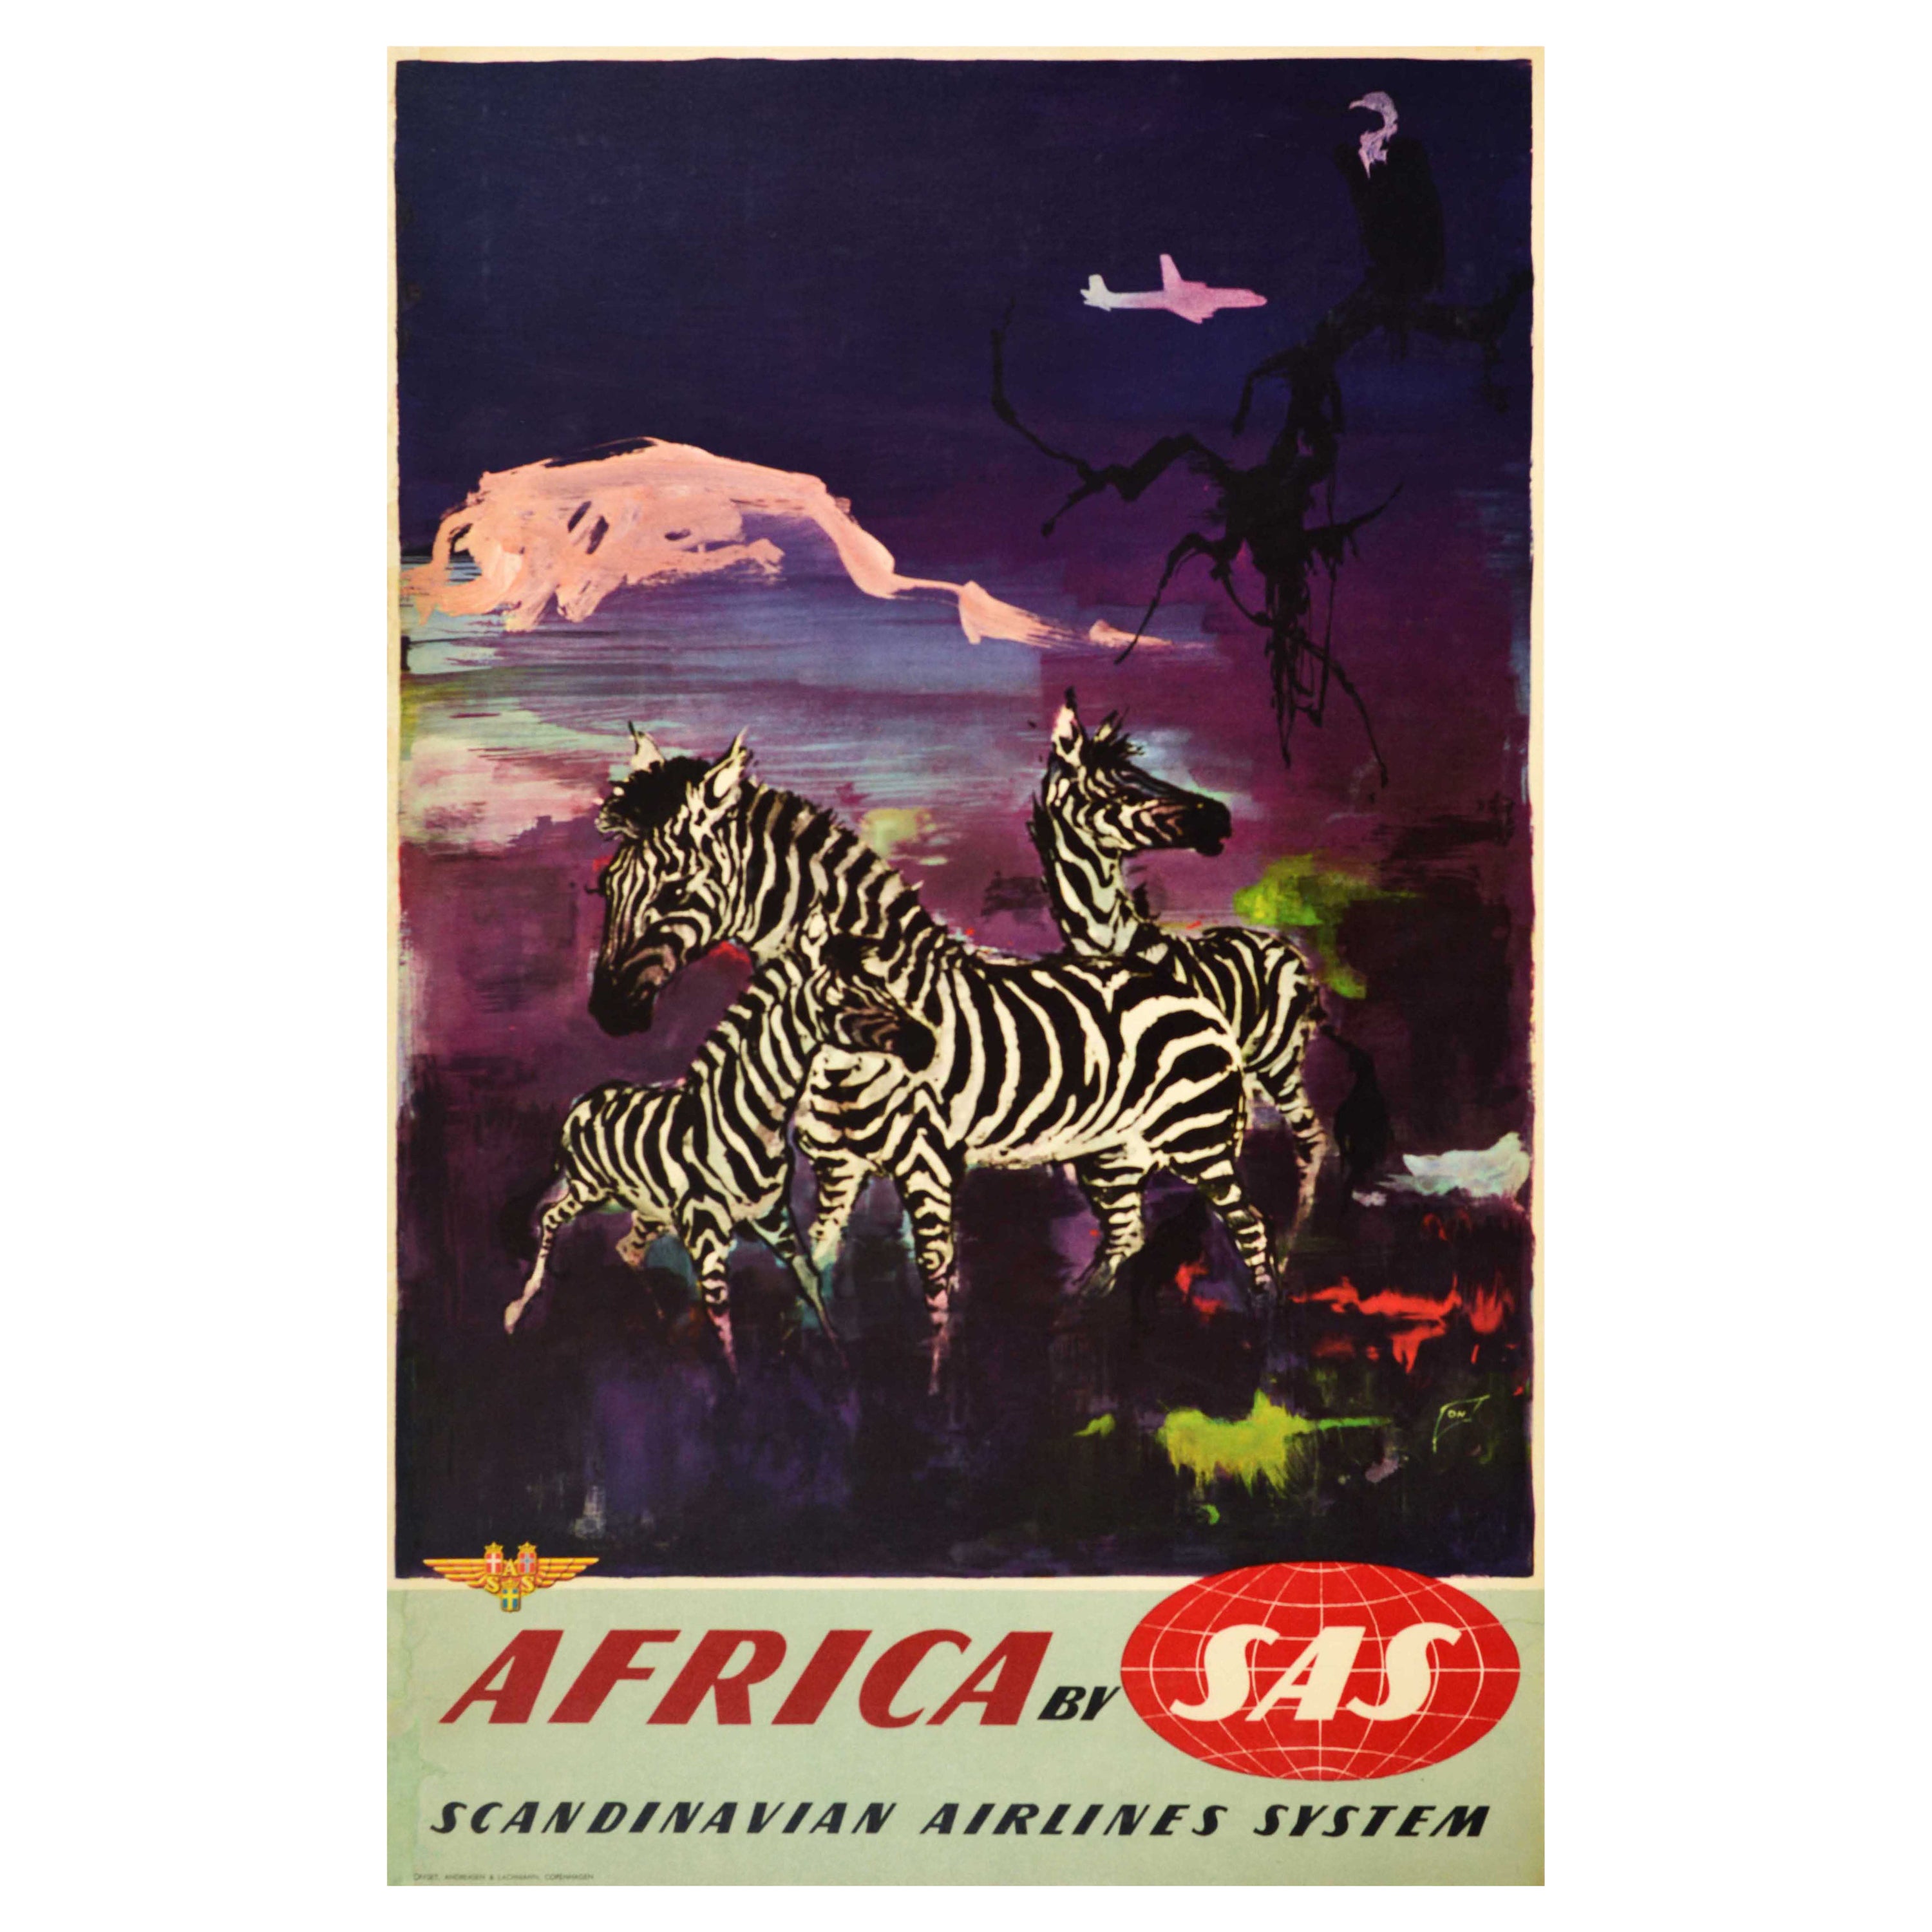 Original Vintage Travel Poster Africa SAS Scandinavian Airlines System Zebra Art For Sale